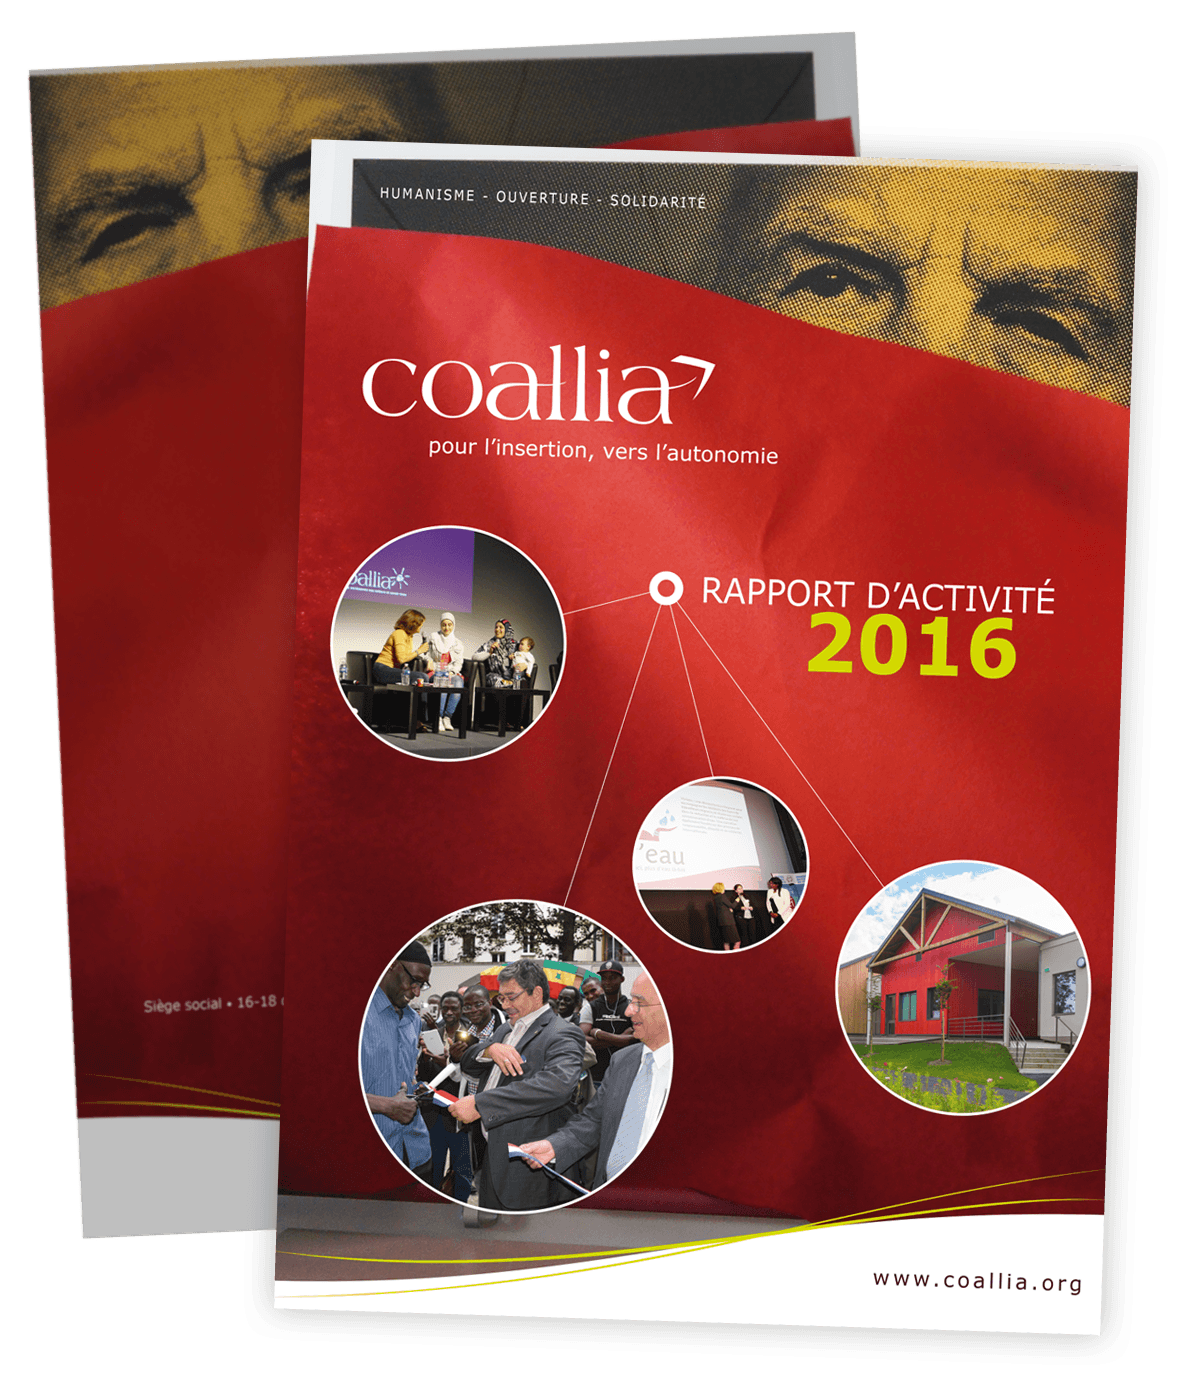 Rapport d'activité 2016 créée pour Coallia par Caramel & Paprika - Première et dernière pages de couverture (photos © Sylvain Frappat / Coallia)